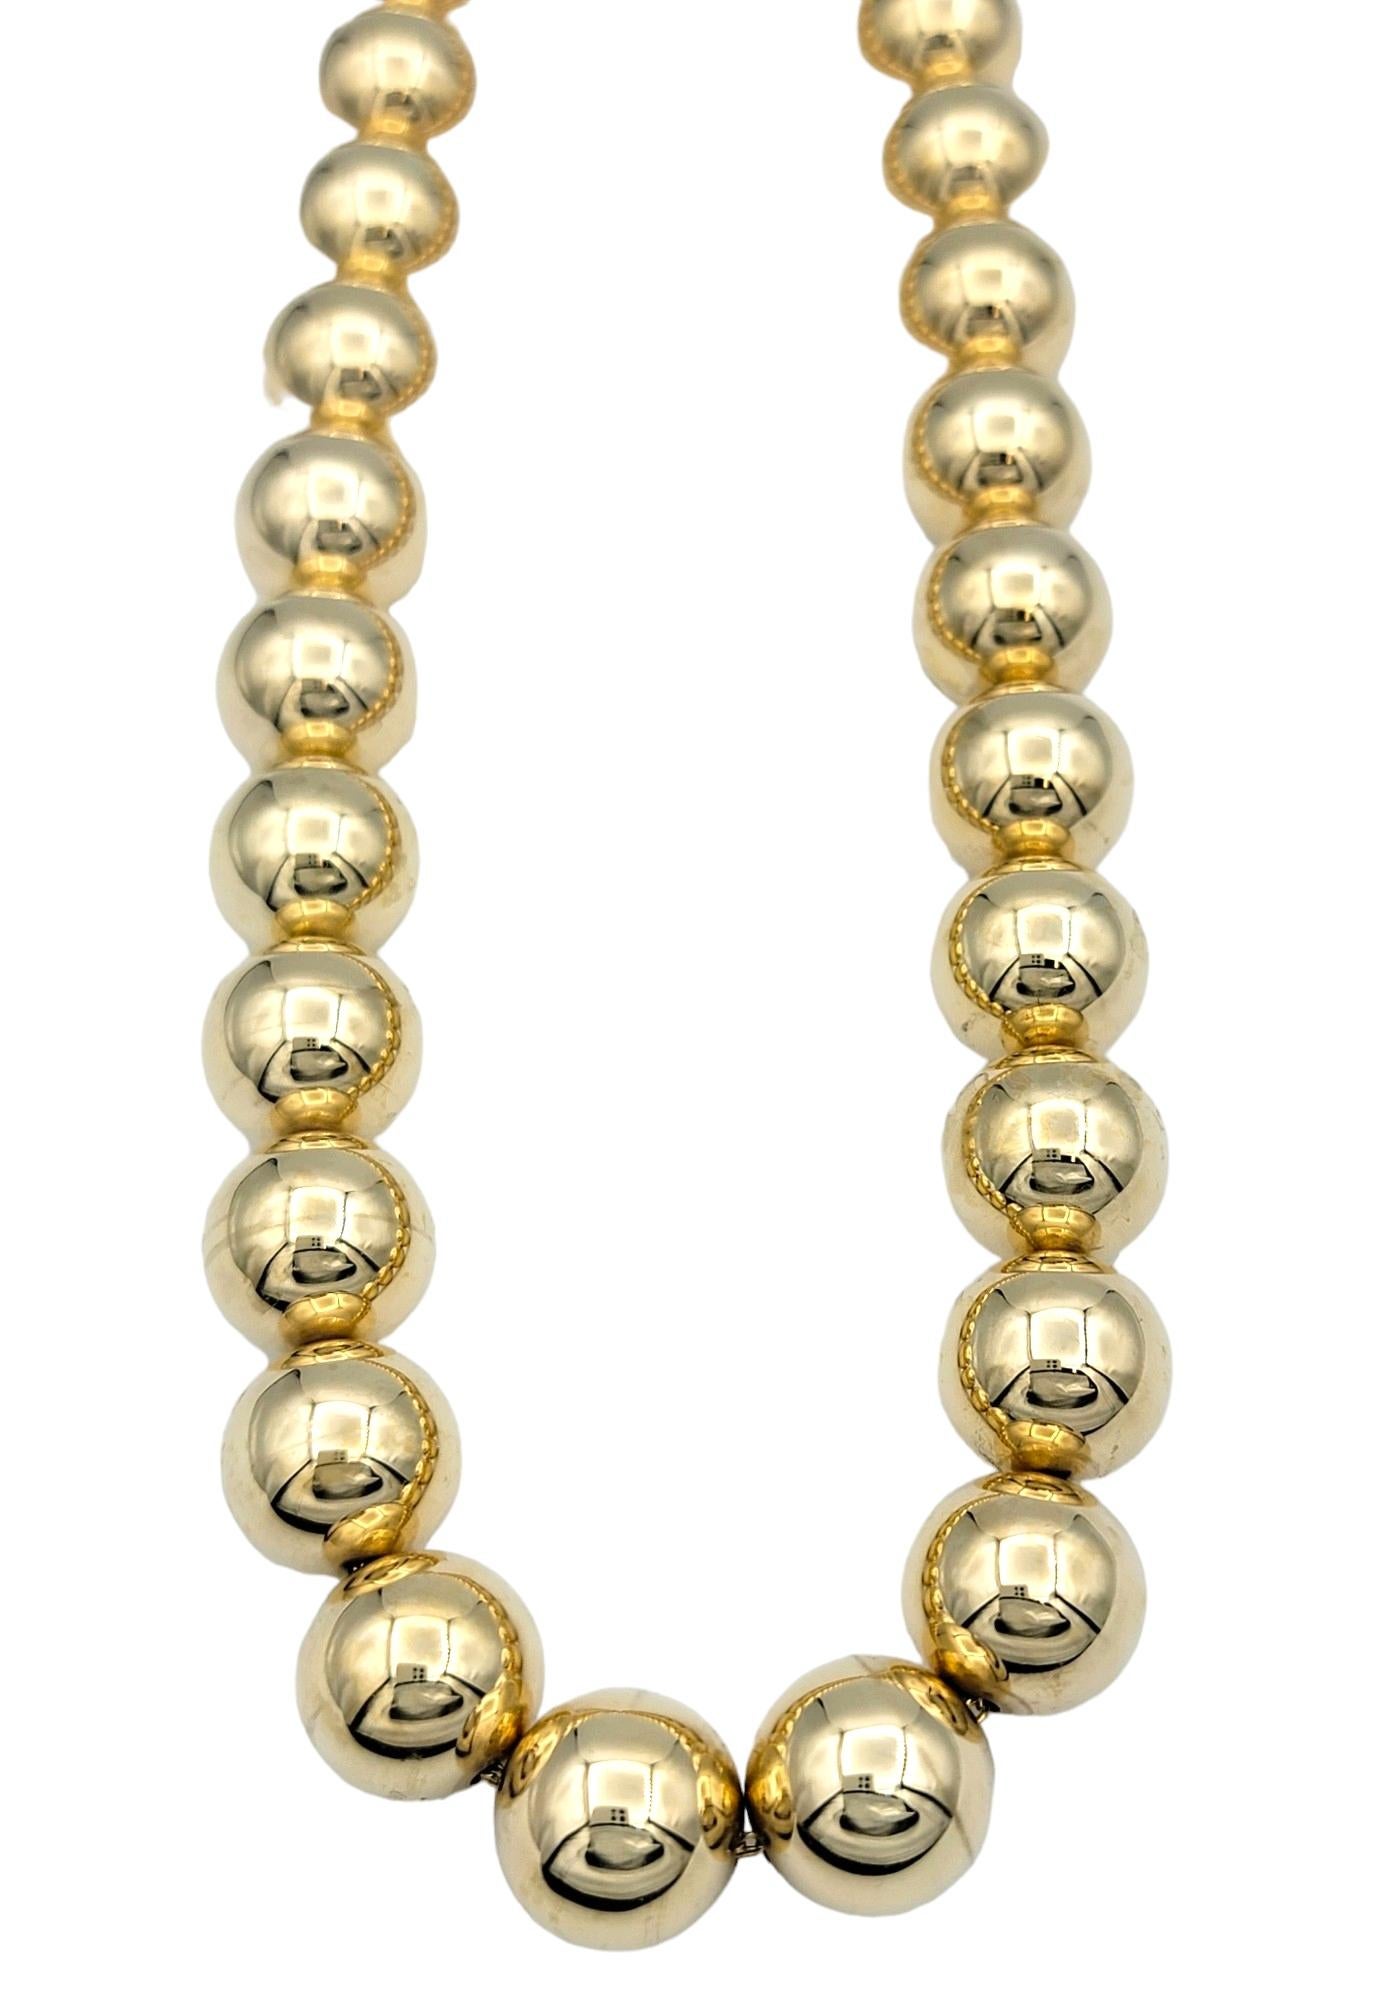 Diese wunderschöne Halskette aus 14-karätigem Gold besticht durch ihr atemberaubendes Design mit großen Kugelperlen, die aus hochglänzendem Gold gefertigt sind. Die kugelförmigen Perlen, die sorgfältig bearbeitet wurden, um einen spiegelähnlichen